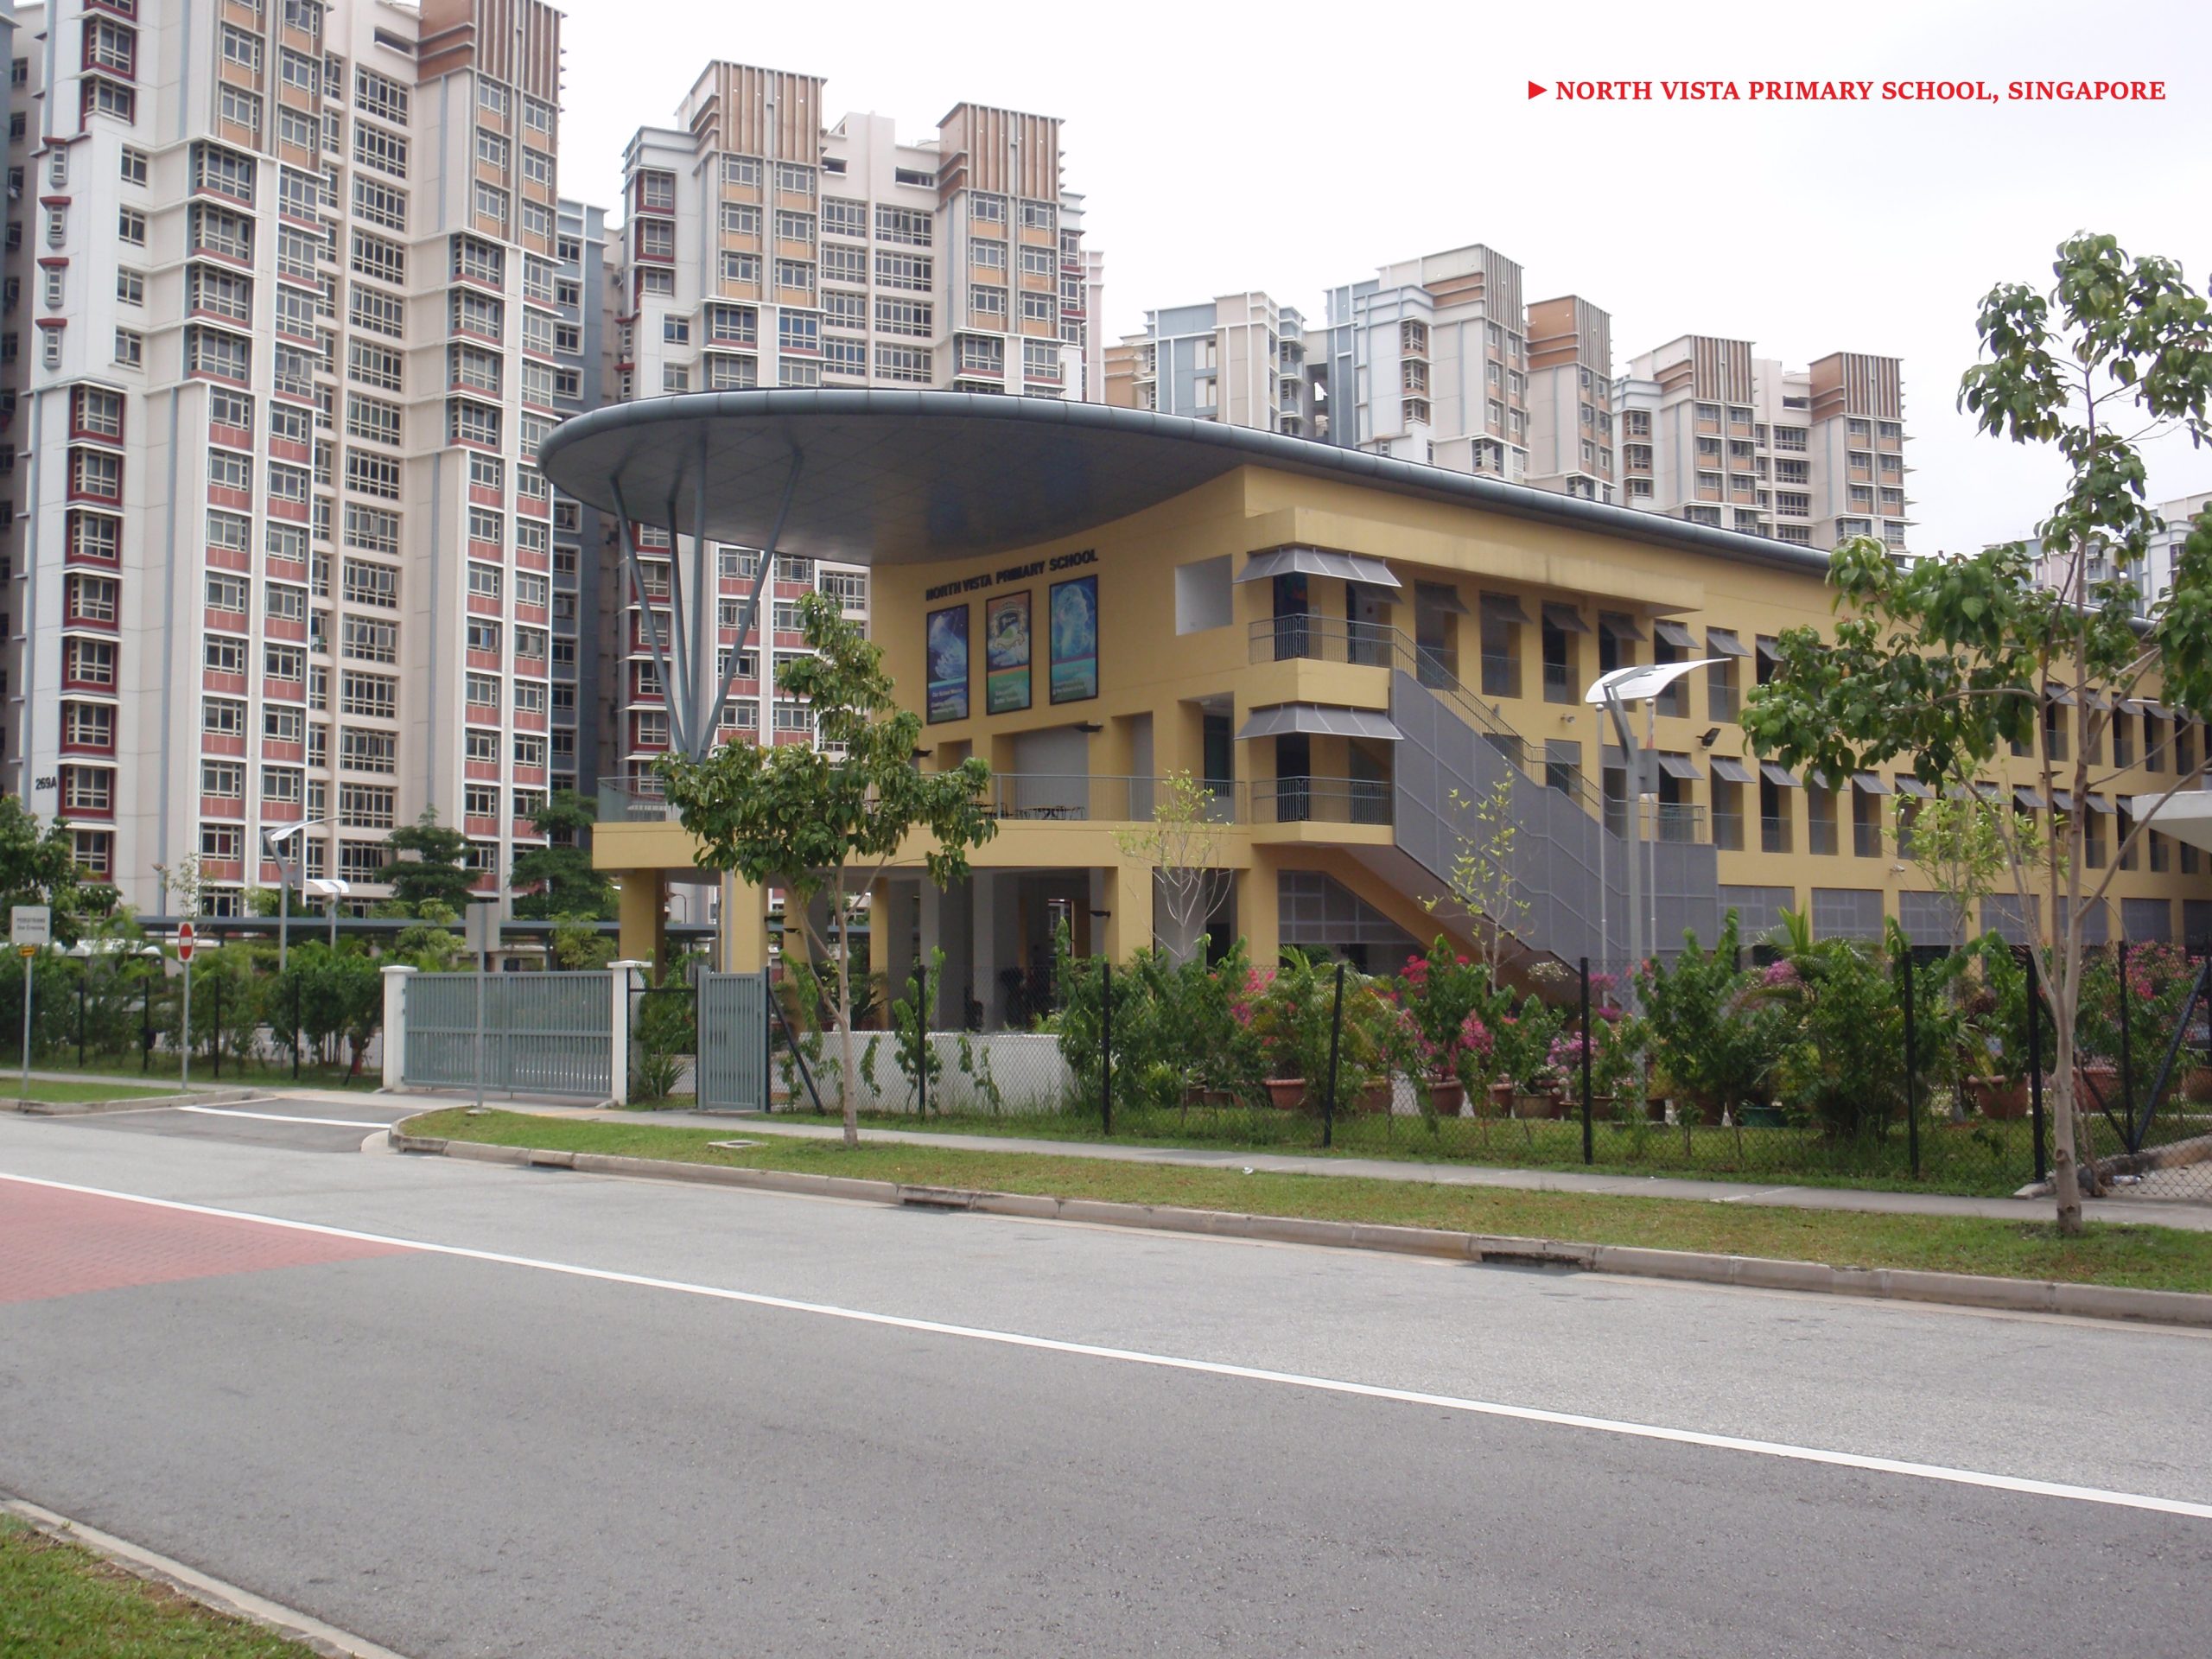 North Vista Primary School, Singapore